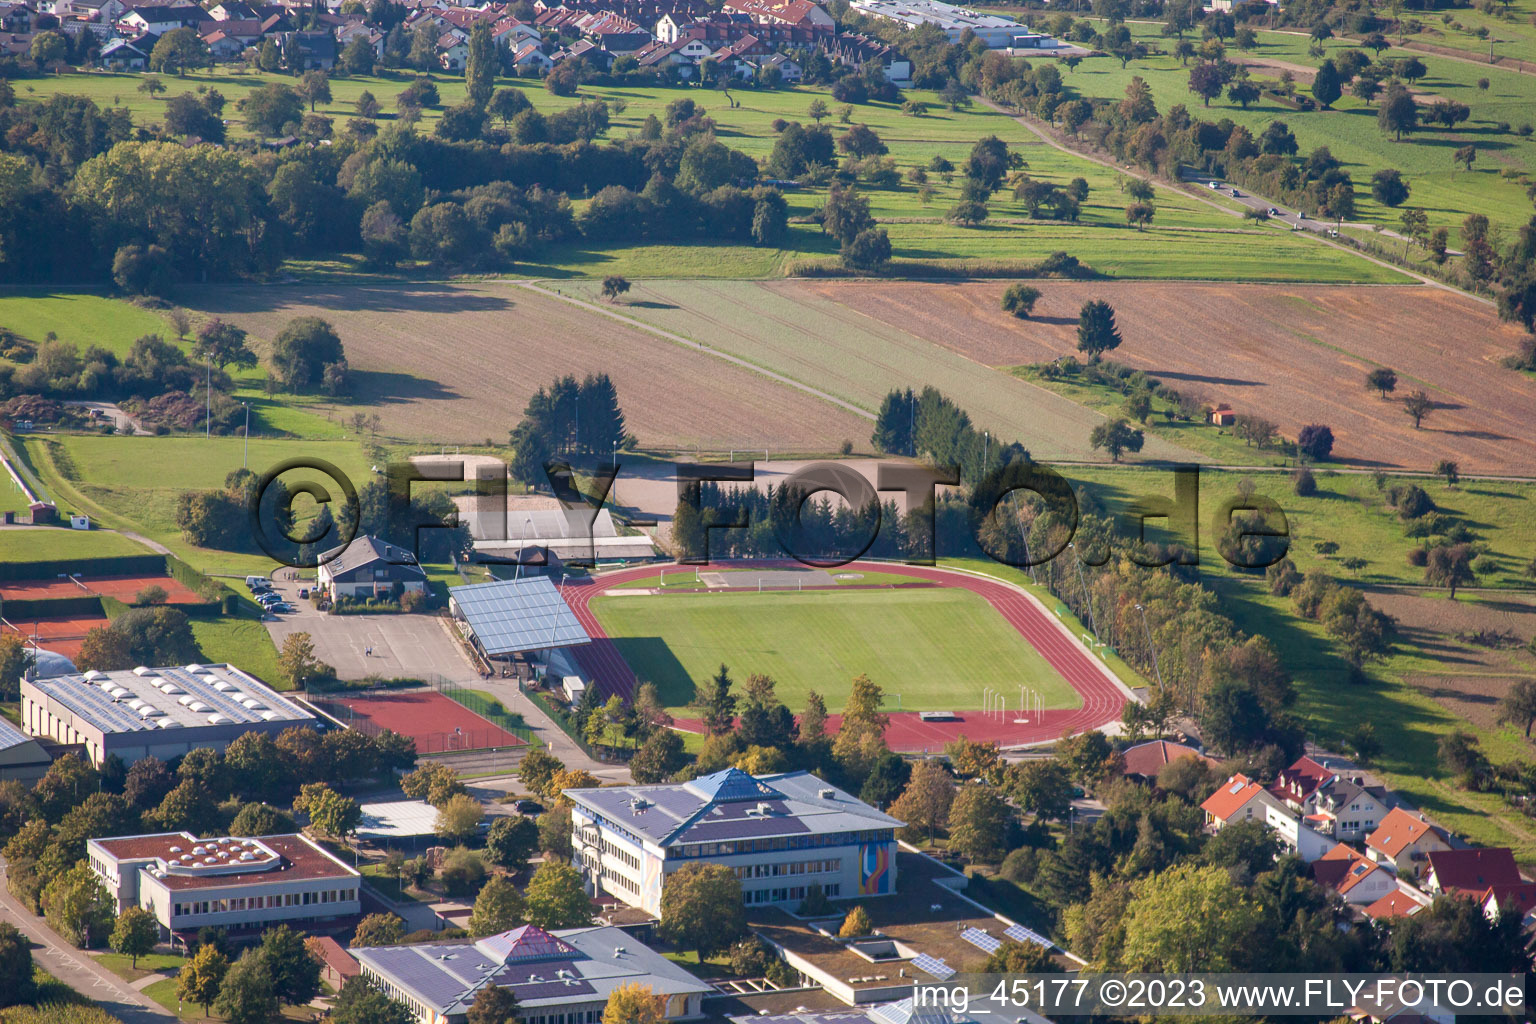 Terrains de sport de SV-1899 eV Langensteinbach à le quartier Langensteinbach in Karlsbad dans le département Bade-Wurtemberg, Allemagne du point de vue du drone